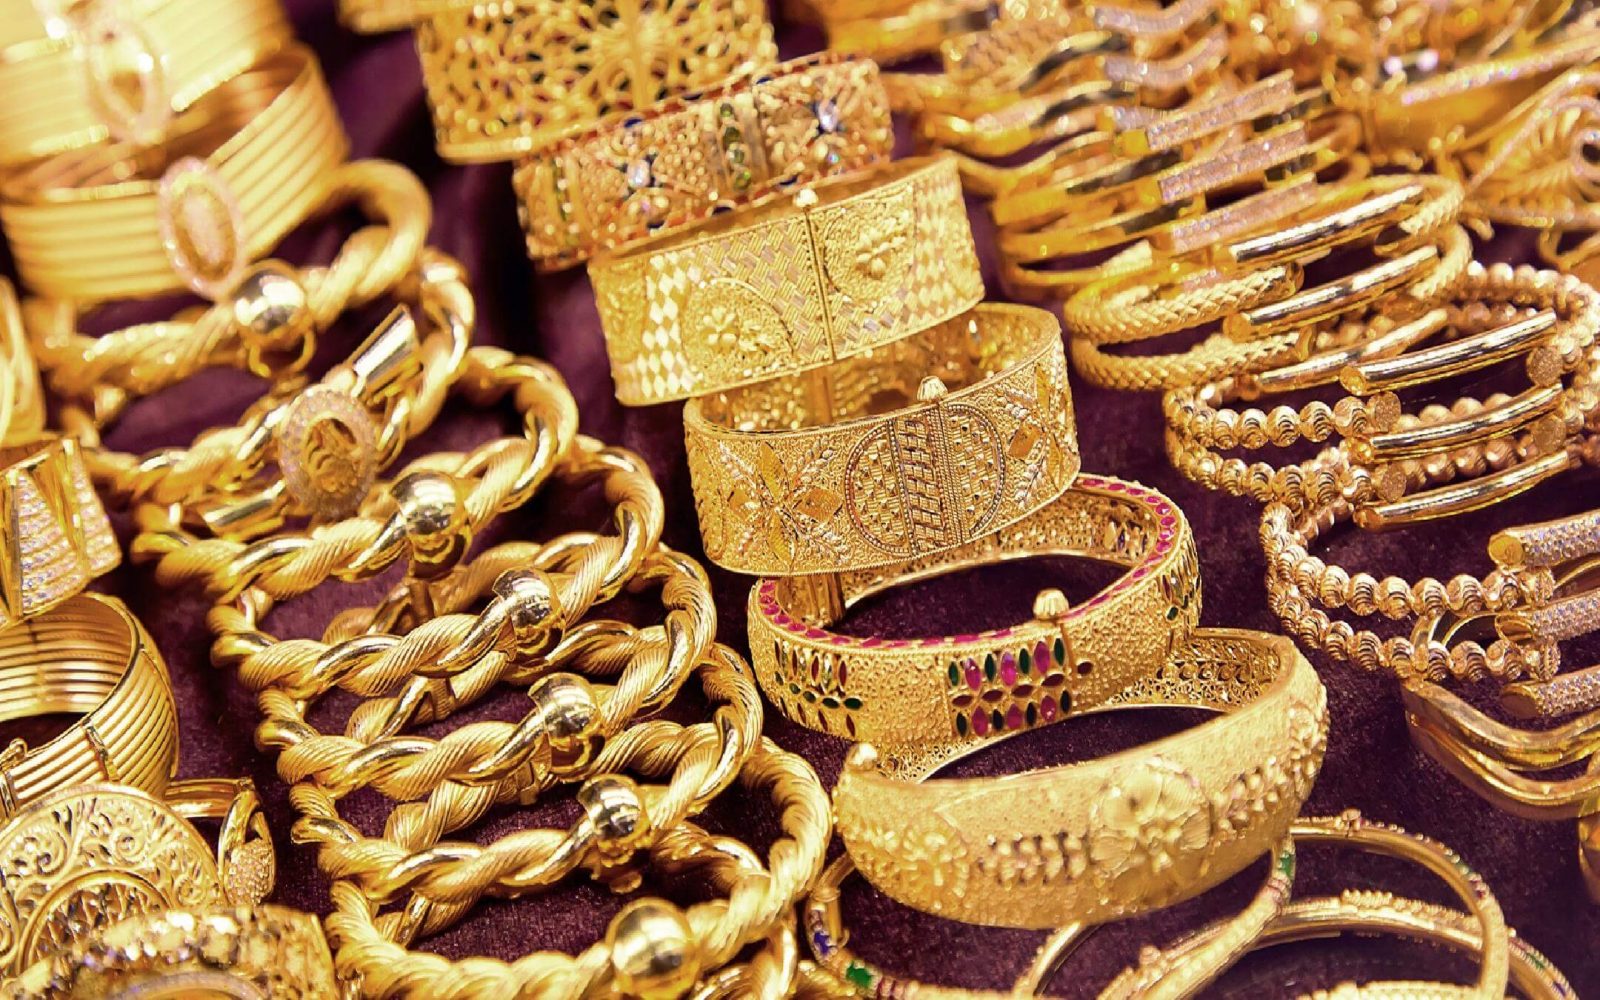 البوكس نيوز – هبوط أسعار الذهب في مصر اليوم الاثنين 27 فبراير 2023